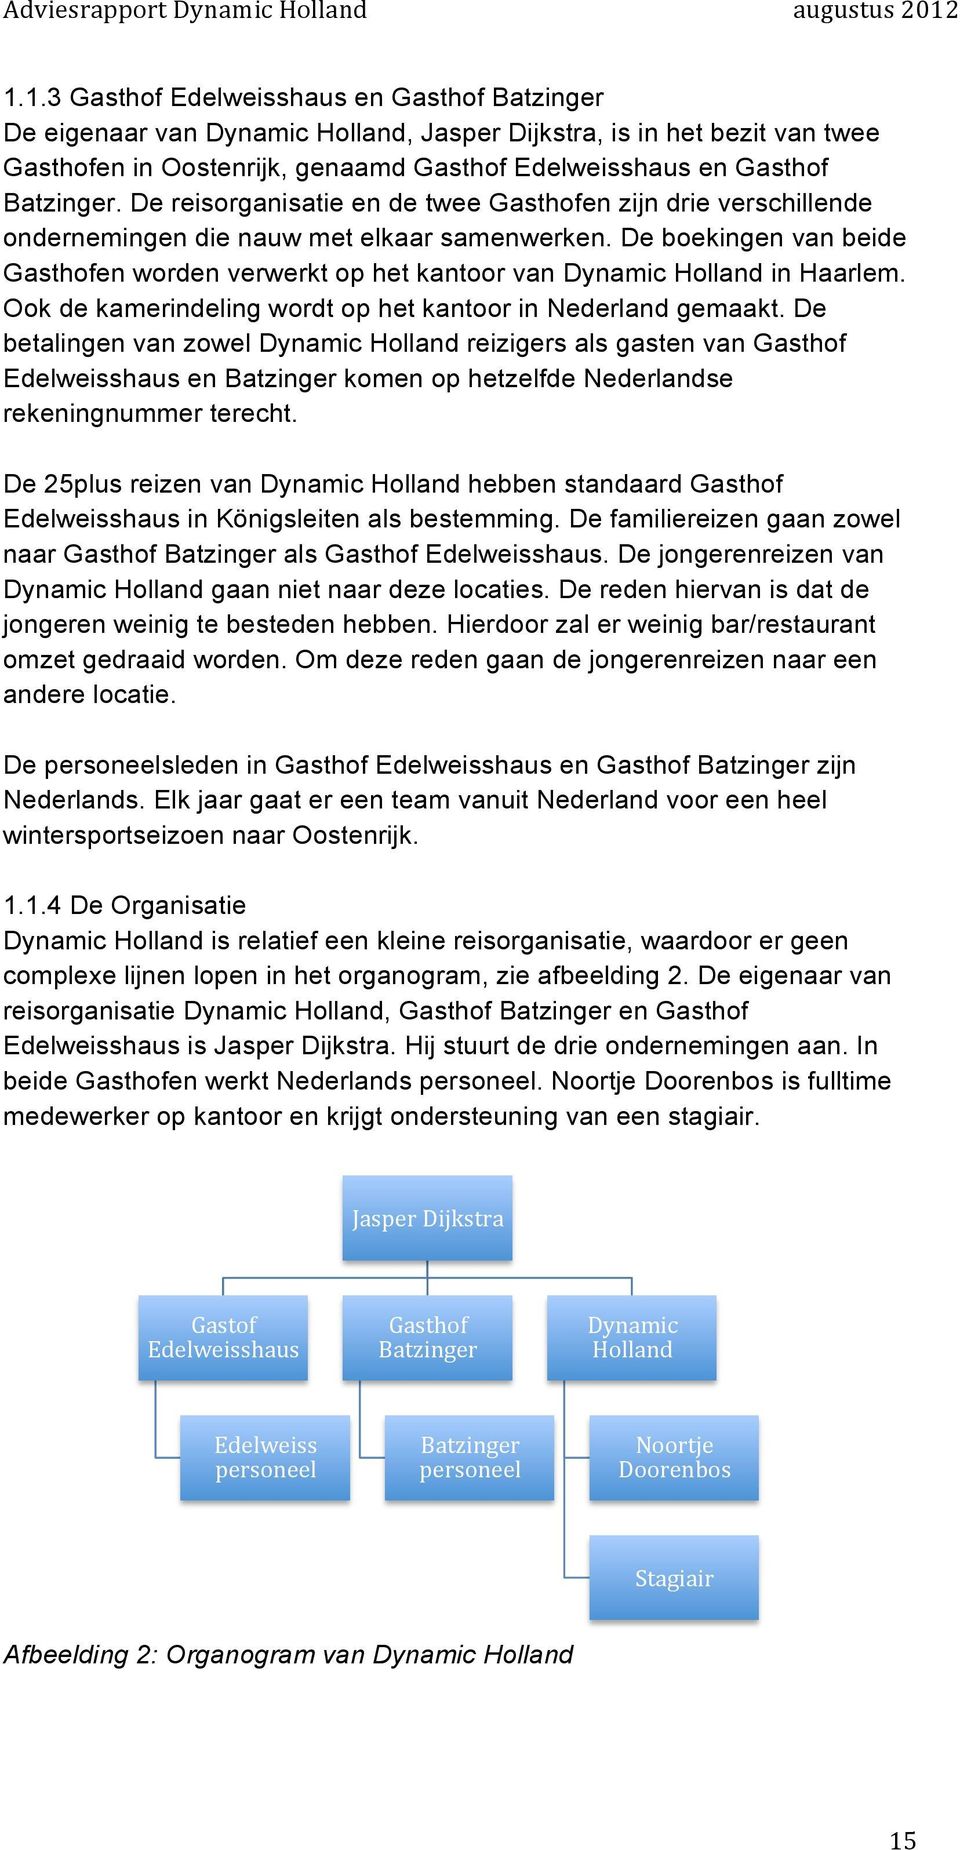 De boekingen van beide Gasthofen worden verwerkt op het kantoor van Dynamic Holland in Haarlem. Ook de kamerindeling wordt op het kantoor in Nederland gemaakt.